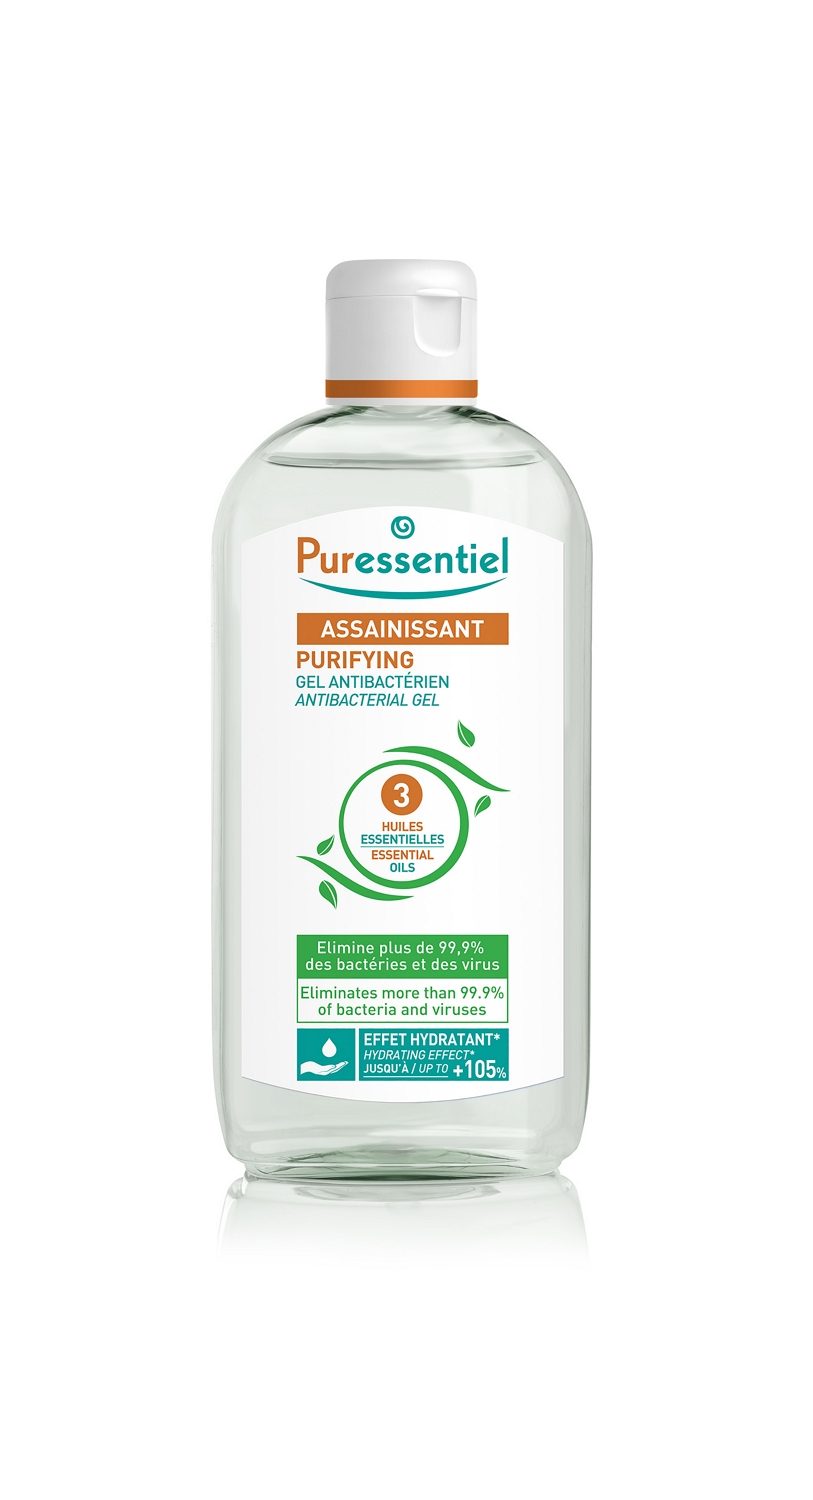 Пюресансьель гель антибактериальный очищающий 3 эфирных масла 250мл